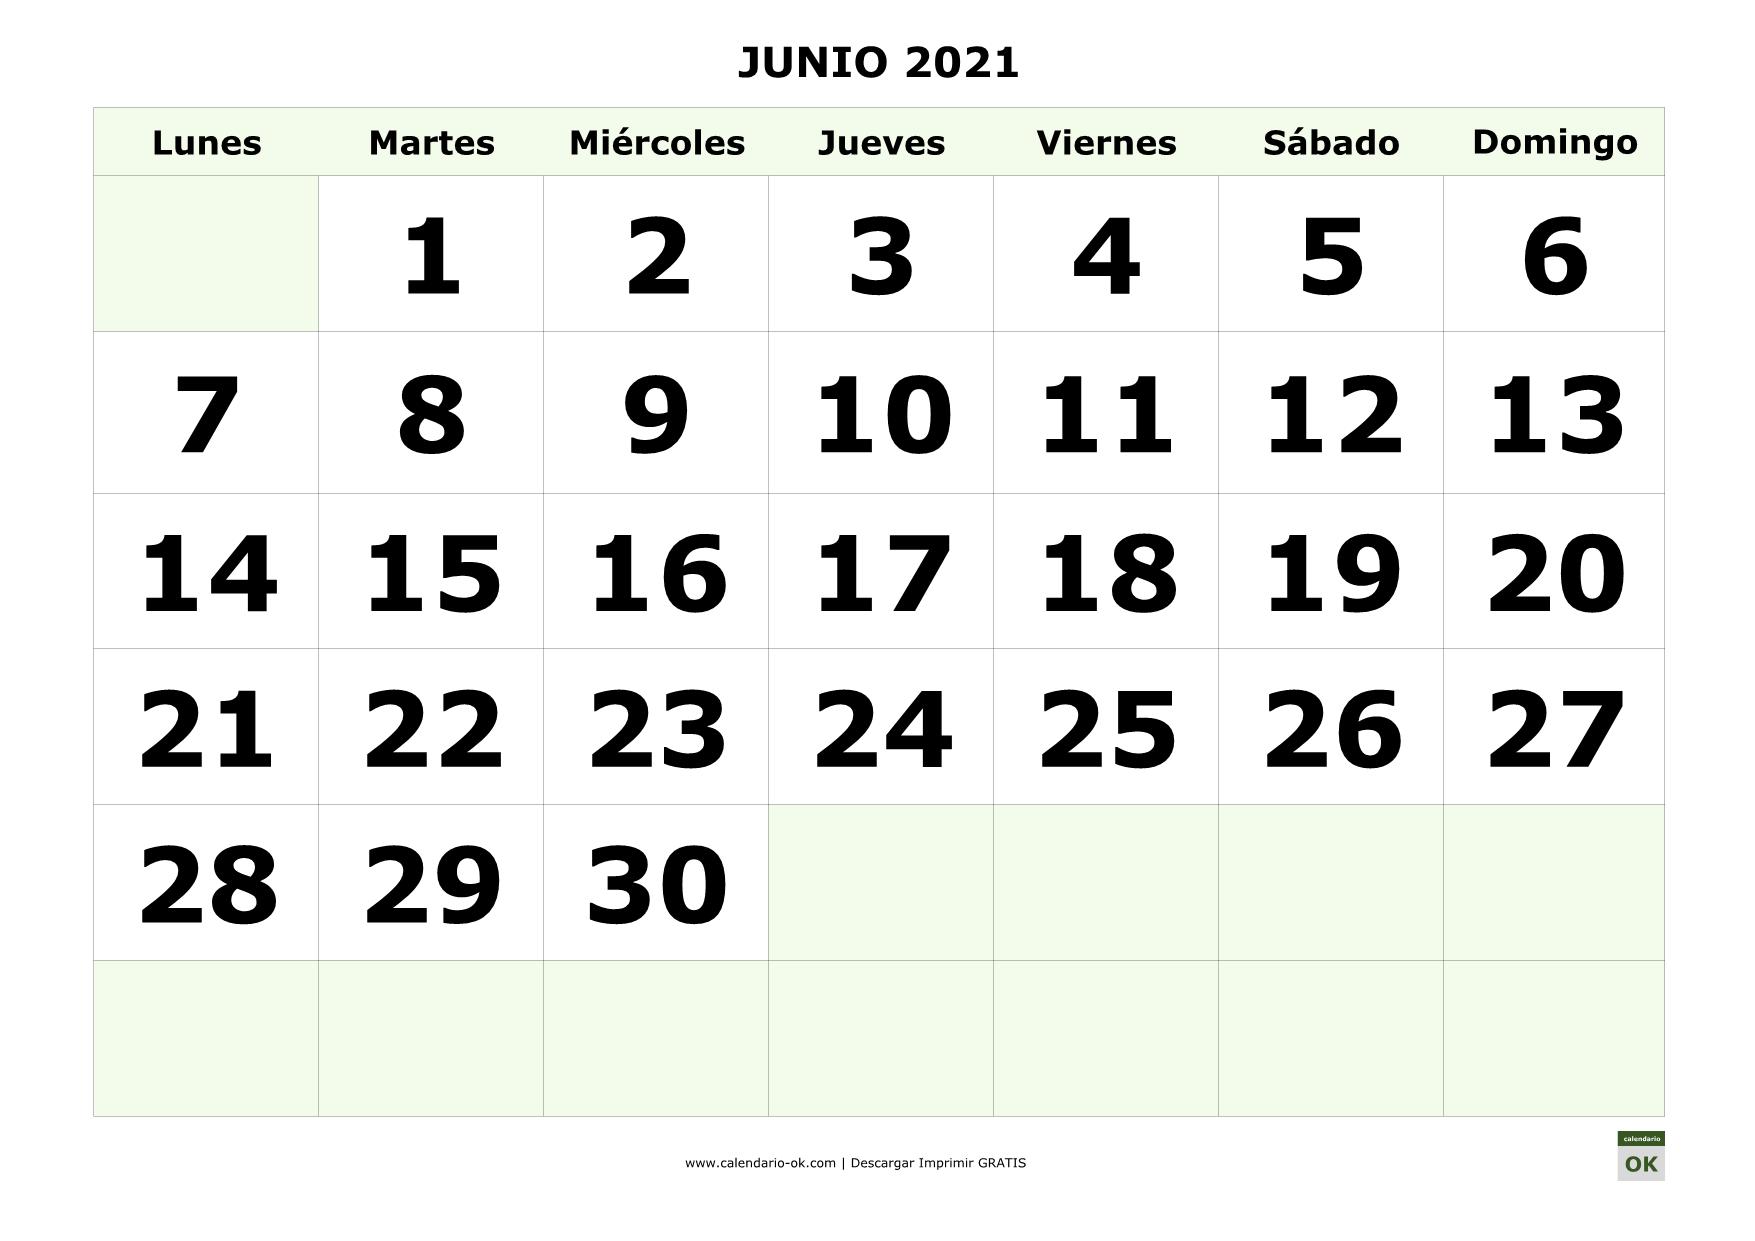 El Calendario De Junio ▷ CALENDARIO 【JUNIO 2021】 para IMPRIMIR en PDF GRATIS ❤️